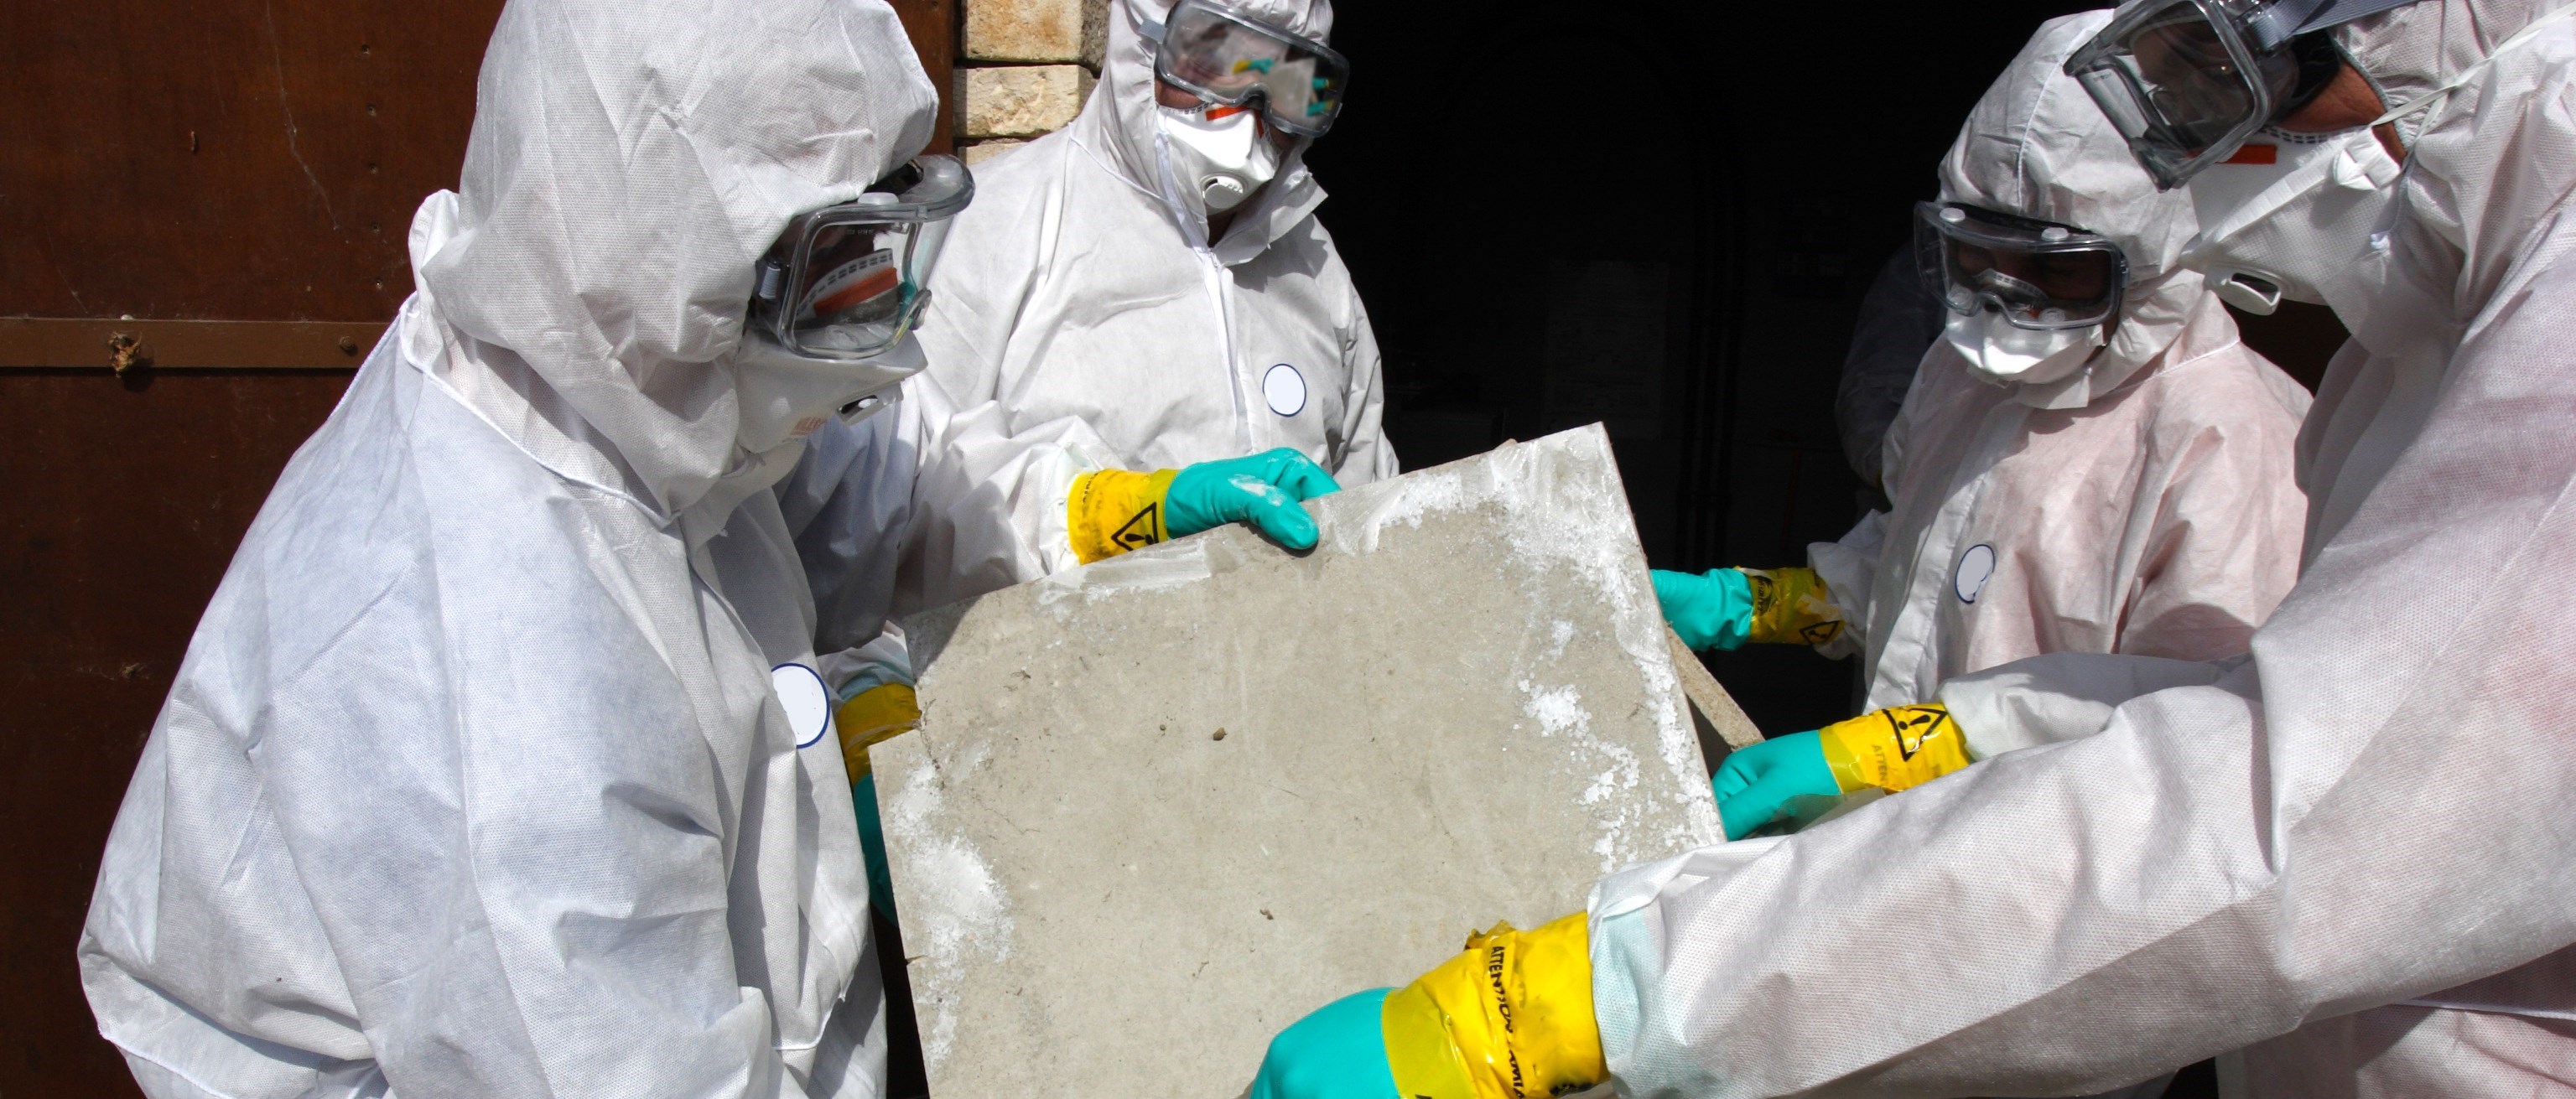 Halvbild som visar fyra personer i heltäckande skyddskläder, munskydd och skyddsglasögon. De håller en skiva med asbest som de lägger i en saneringspåse. Personerna står bakom en avspärrning.